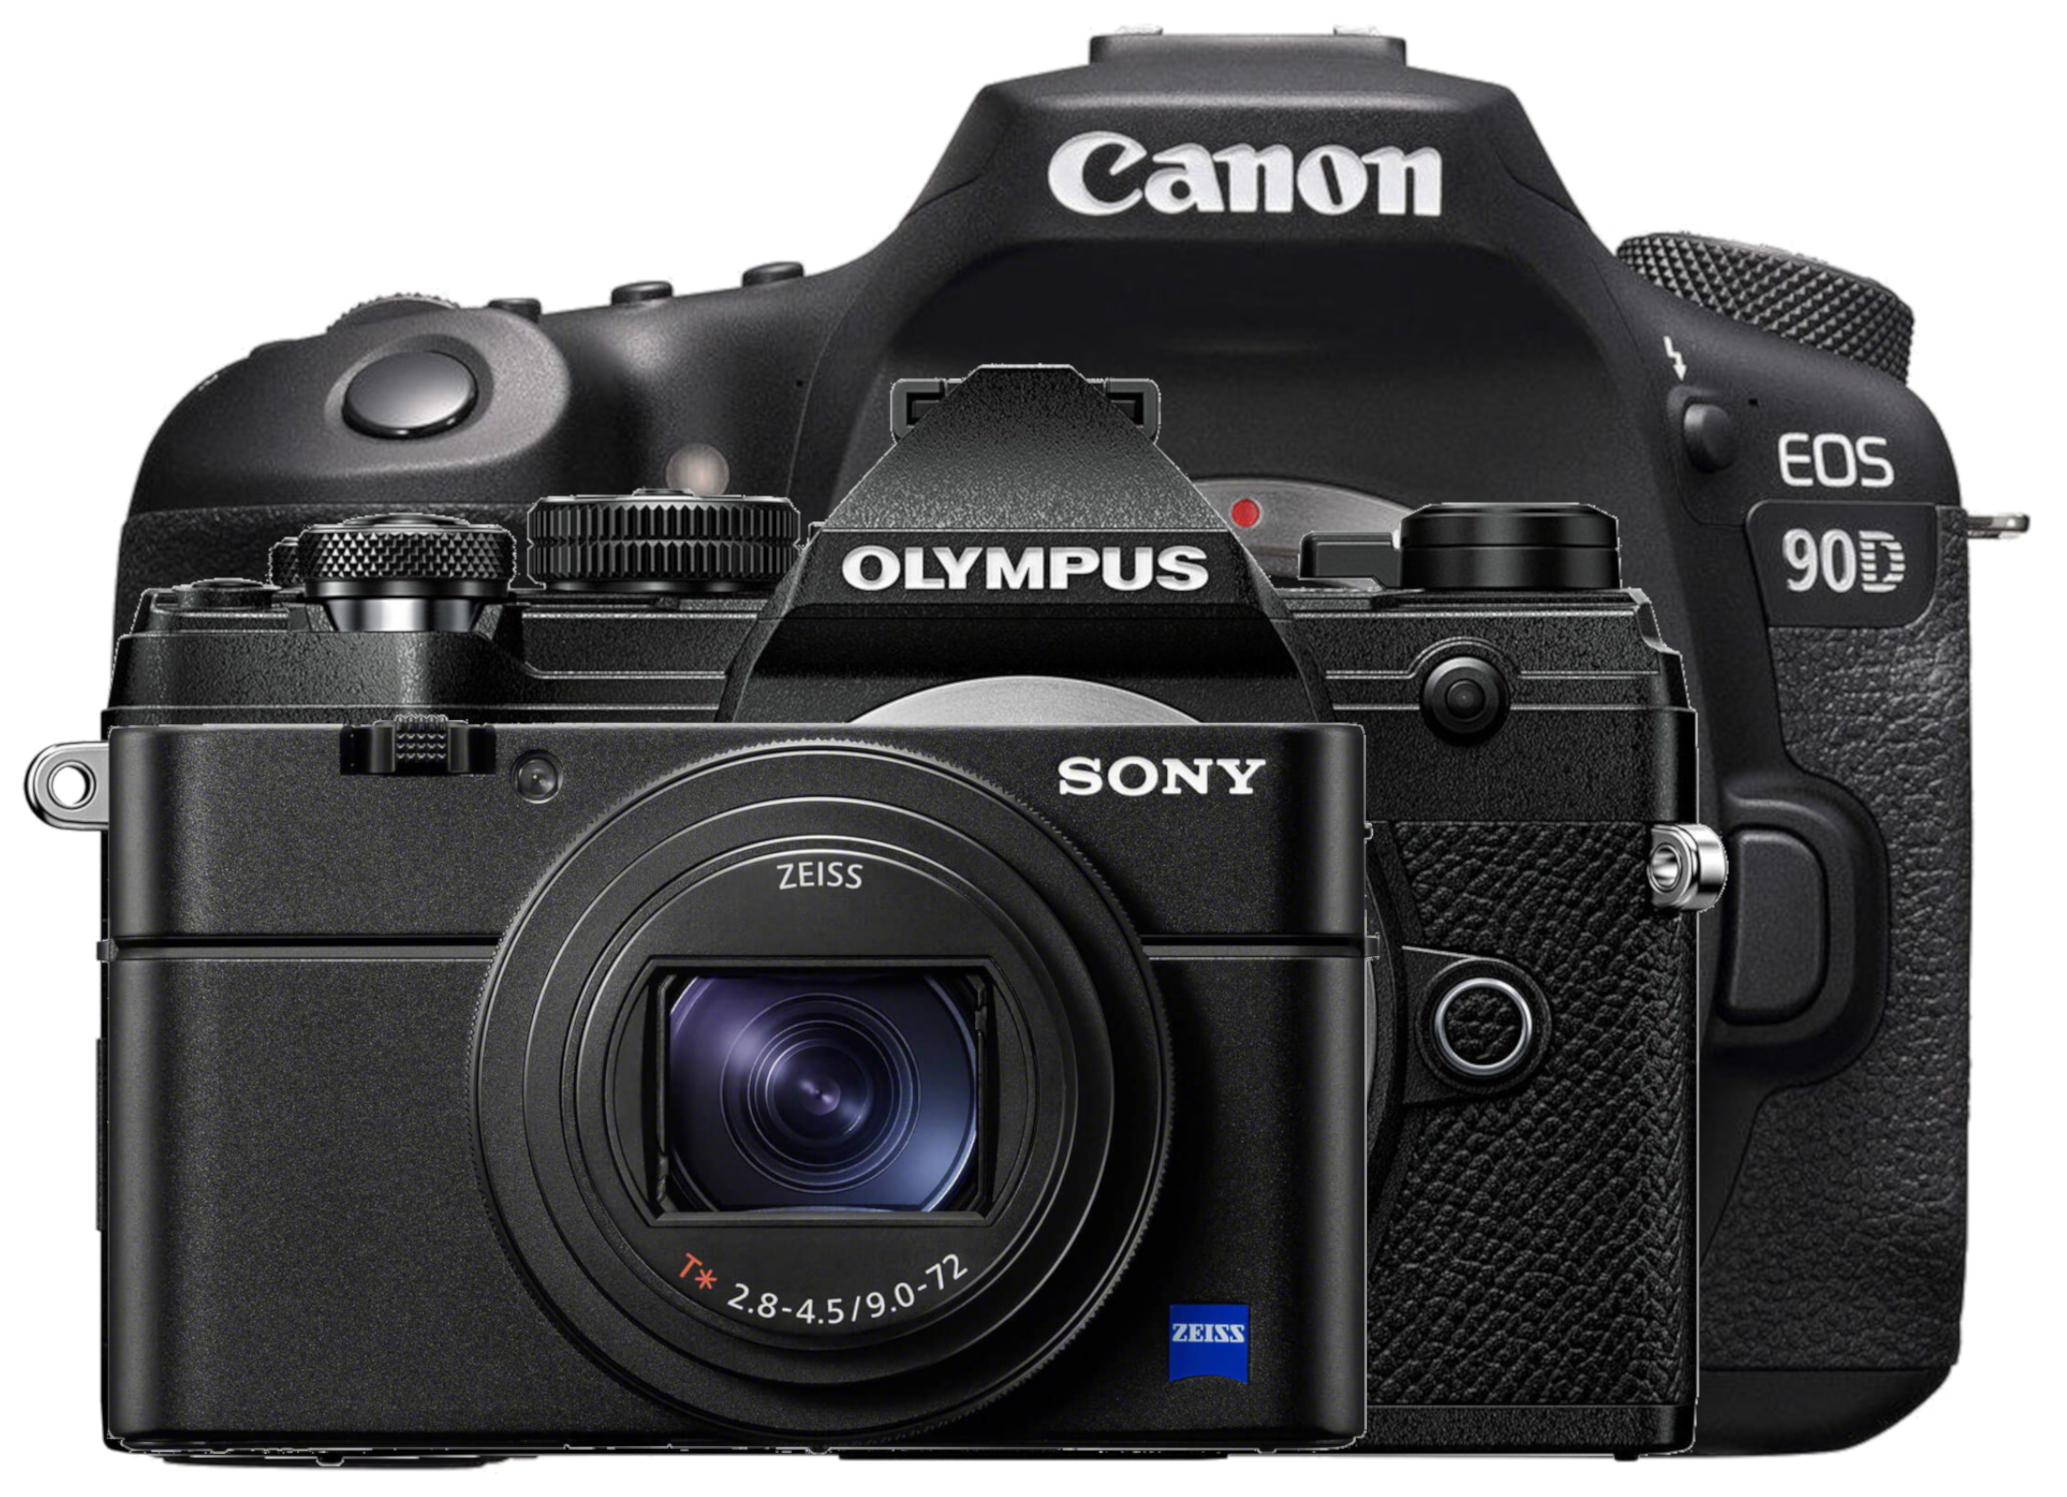 Olympus E-M5 Mark III vs Canon 90D vs Sony RX100 VII - 11